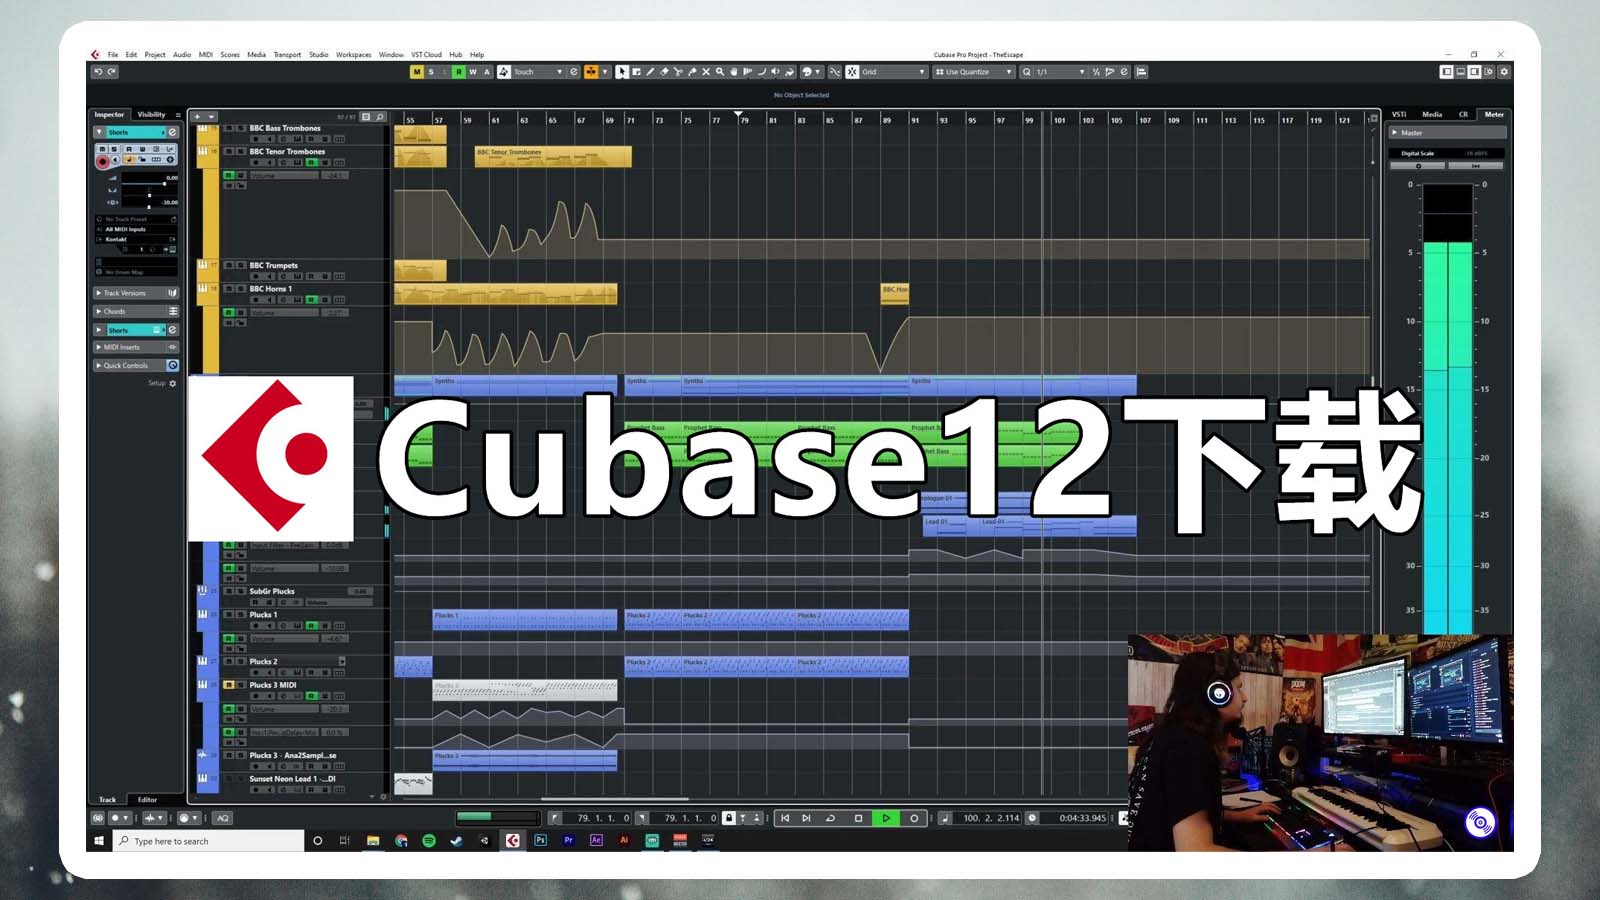 Cubase12最强编曲混音软件【音乐制作软件Cubase12最新完整音源版】Cubase12软件【Windows完整音源版】包括官方插件+音源